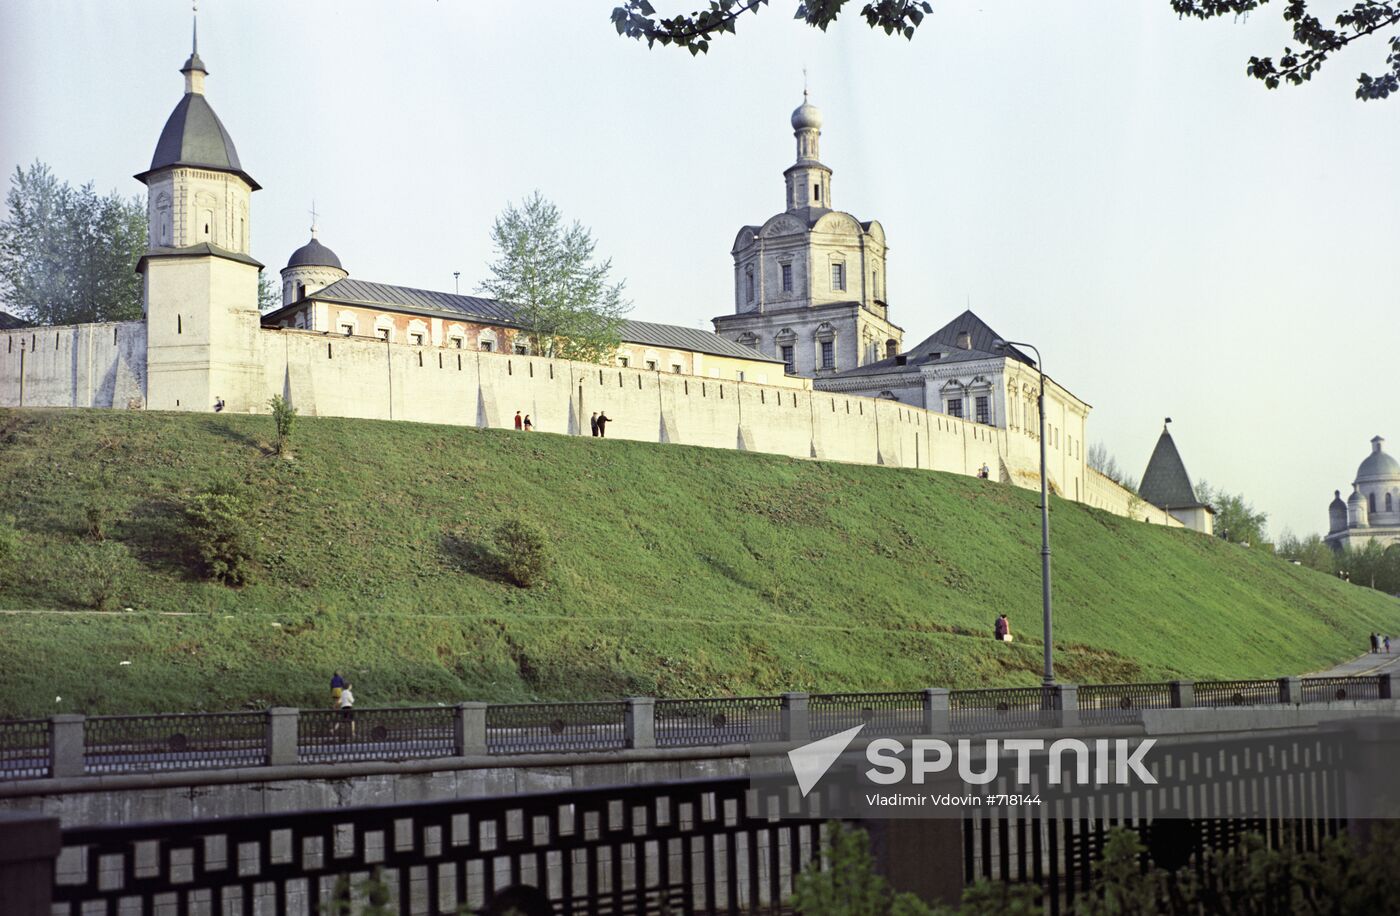 The Andronikov Monastery of the Saviour